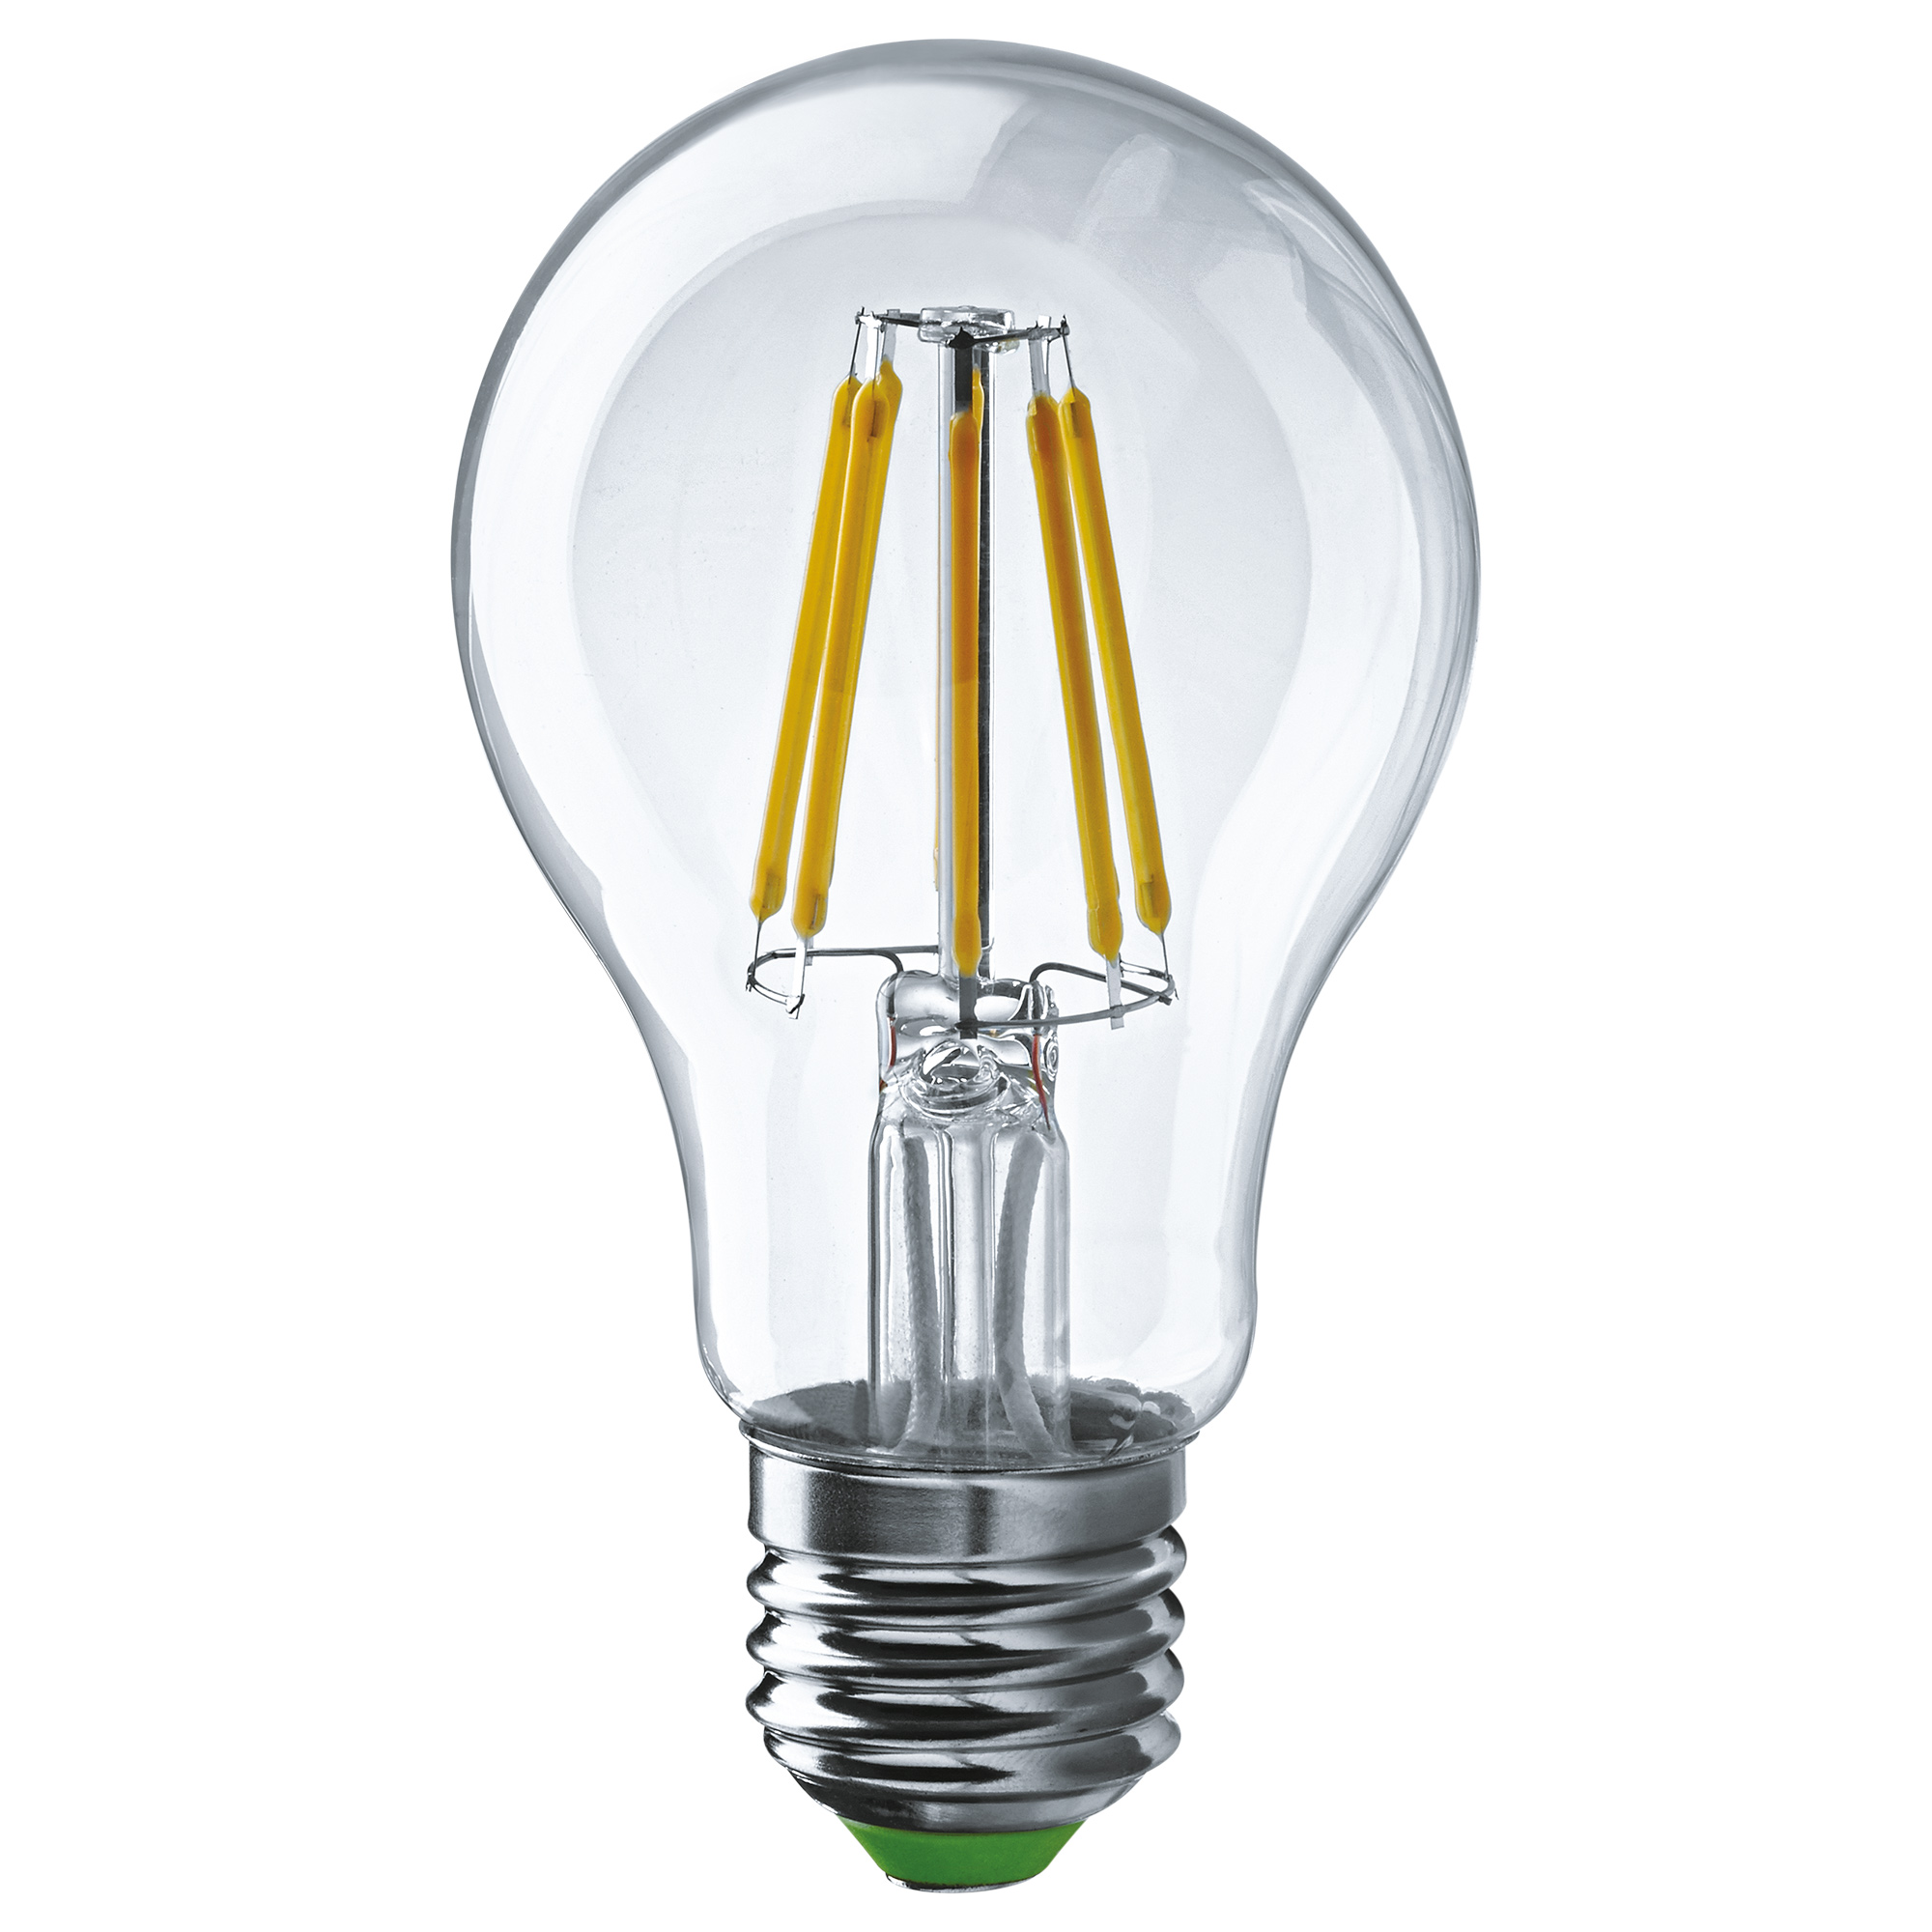 Лампа светодиодная Navigator груша прозрачная 8Вт цоколь E27 (теплый свет) лампа светодиодная navigator зеркальная r50 5вт цоколь e14 теплый свет